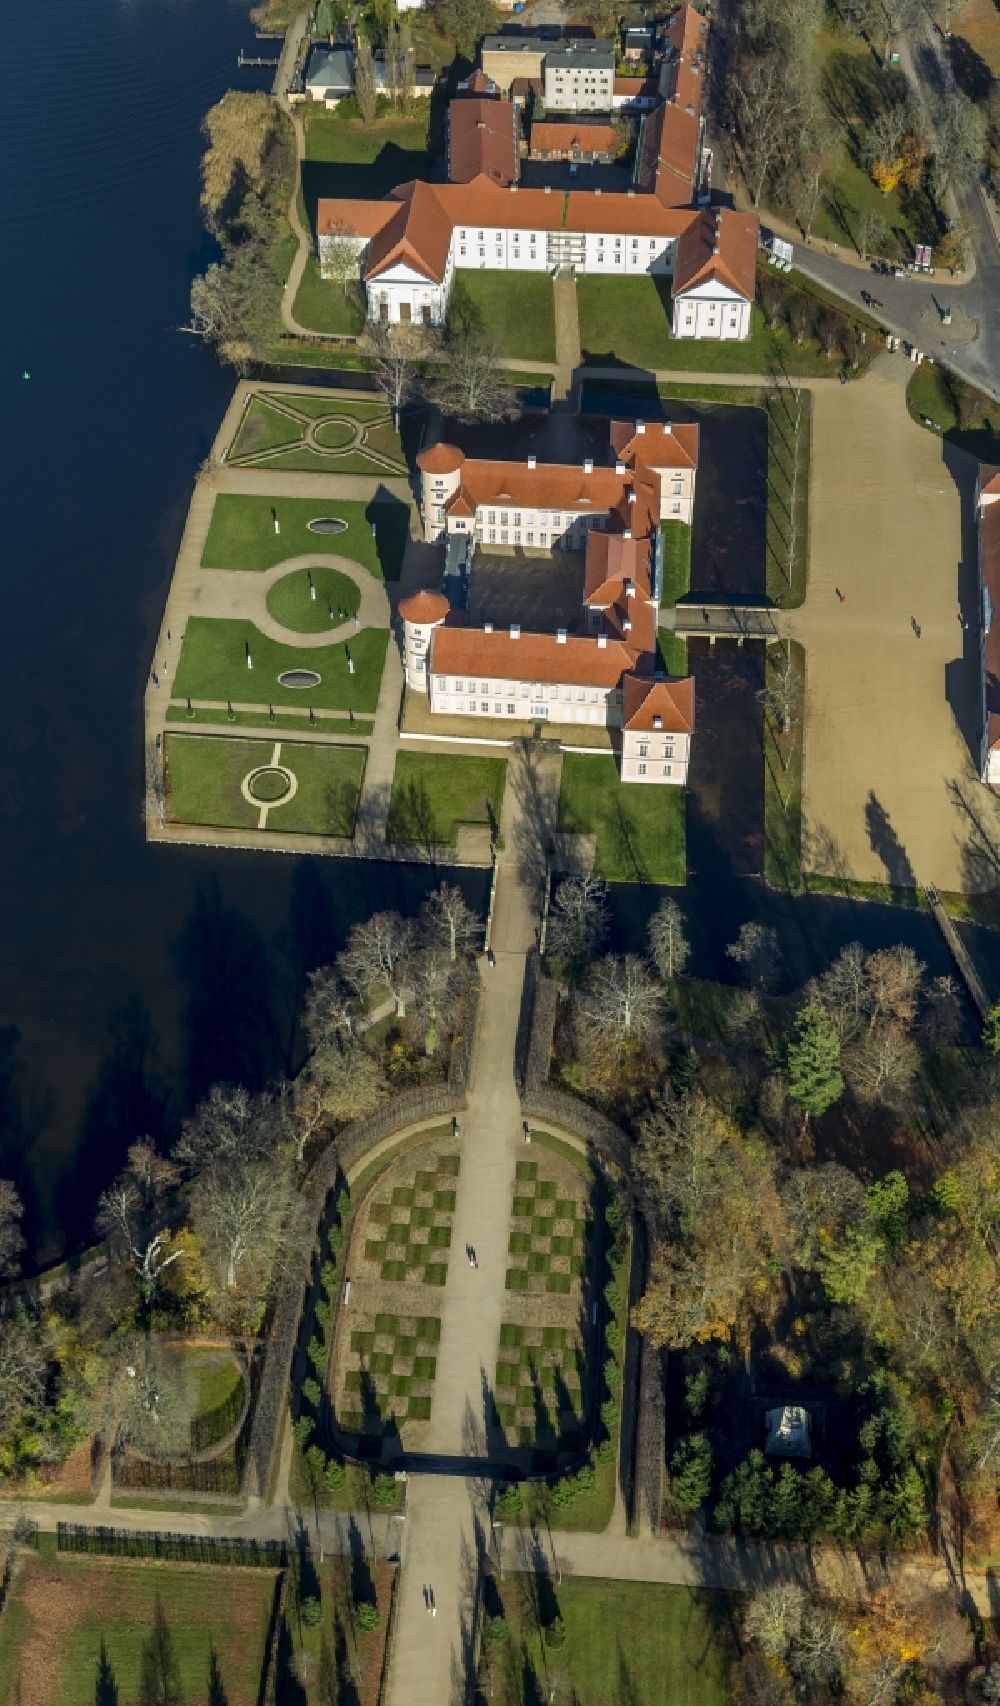 Rheinsberg von oben - Schloss Rheinsberg in der Stadt Rheinsberg am Grienericksee in Brandenburg